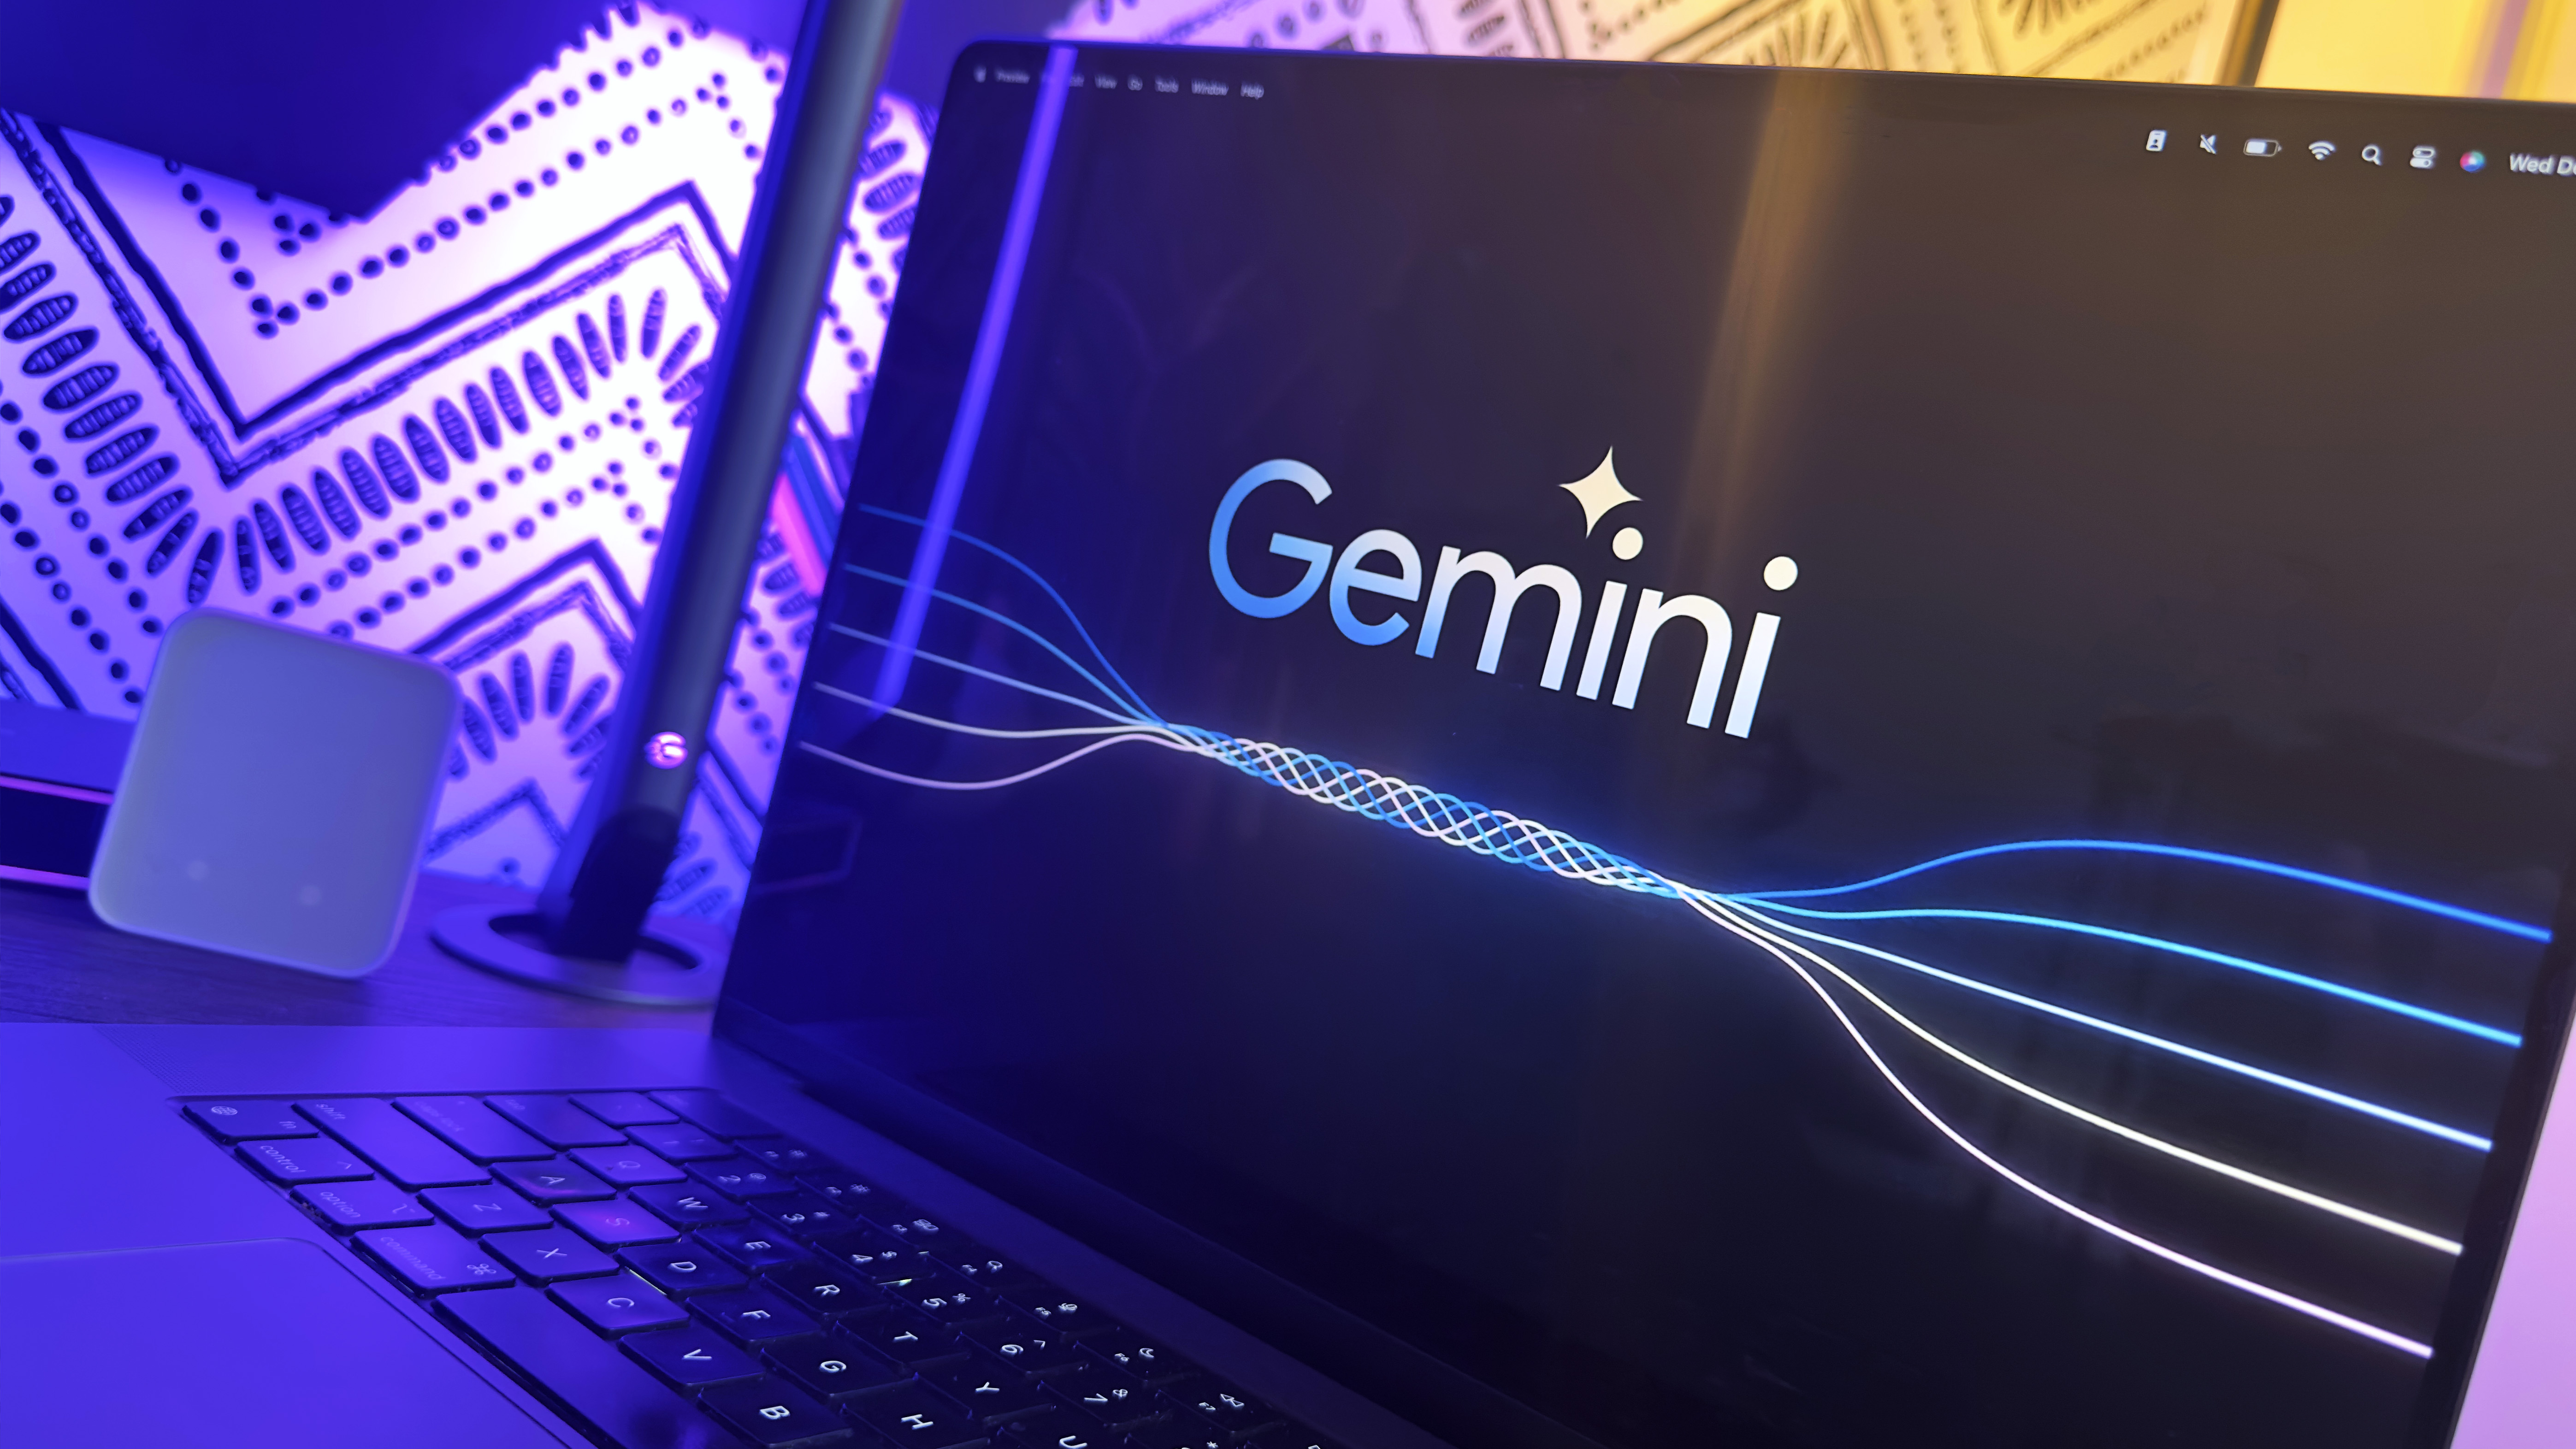 Google suspend la génération d’images de personnes dans Gemini